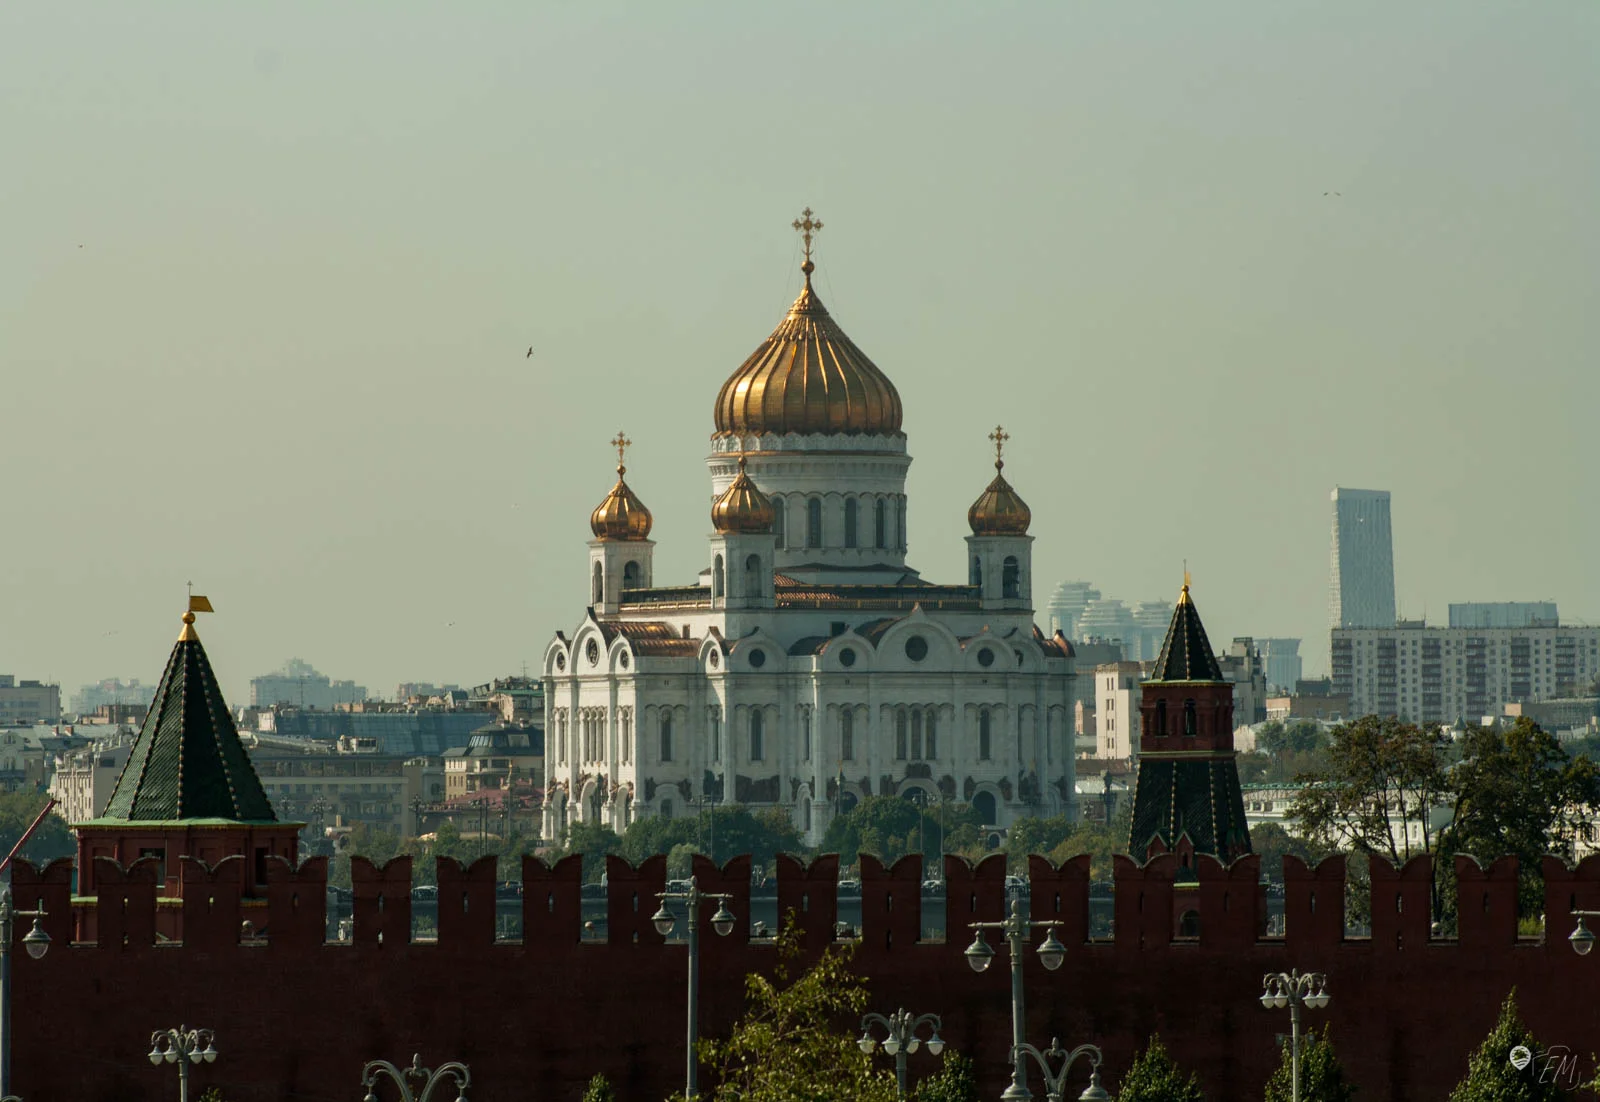 Das Gelände des Skywalks bietet einen wunderbaren Ausblick auf das Kreml Gelände und darüber hinaus